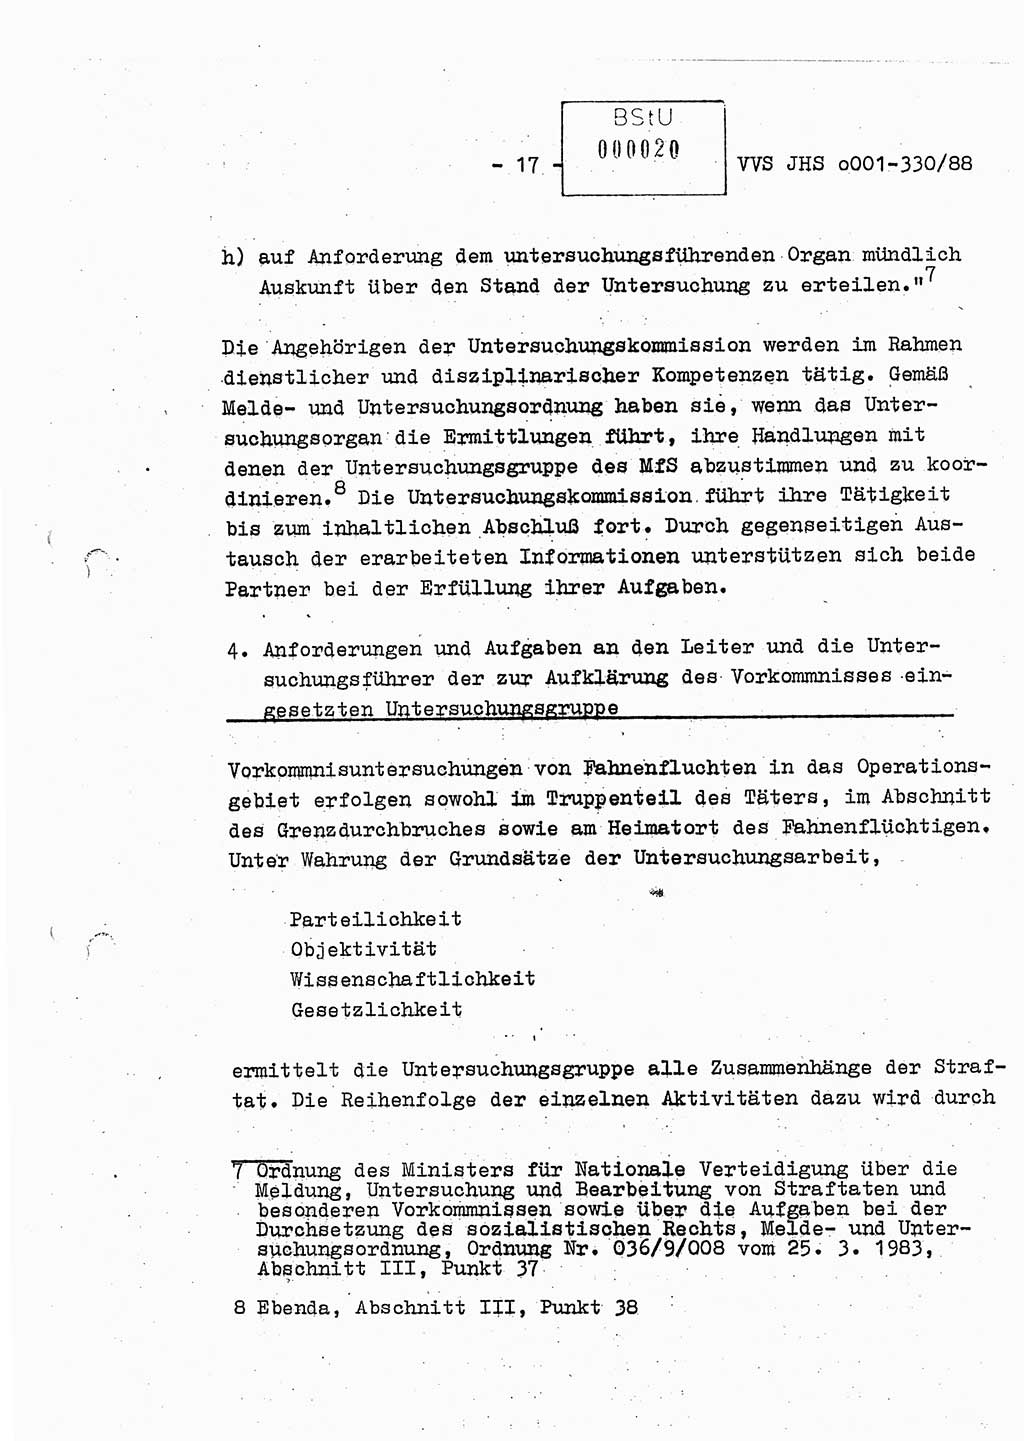 Diplomarbeit Offiziersschüler Thomas Mühle (HA Ⅸ/6), Ministerium für Staatssicherheit (MfS) [Deutsche Demokratische Republik (DDR)], Juristische Hochschule (JHS), Vertrauliche Verschlußsache (VVS) o001-330/88, Potsdam 1988, Seite 17 (Dipl.-Arb. MfS DDR JHS VVS o001-330/88 1988, S. 17)